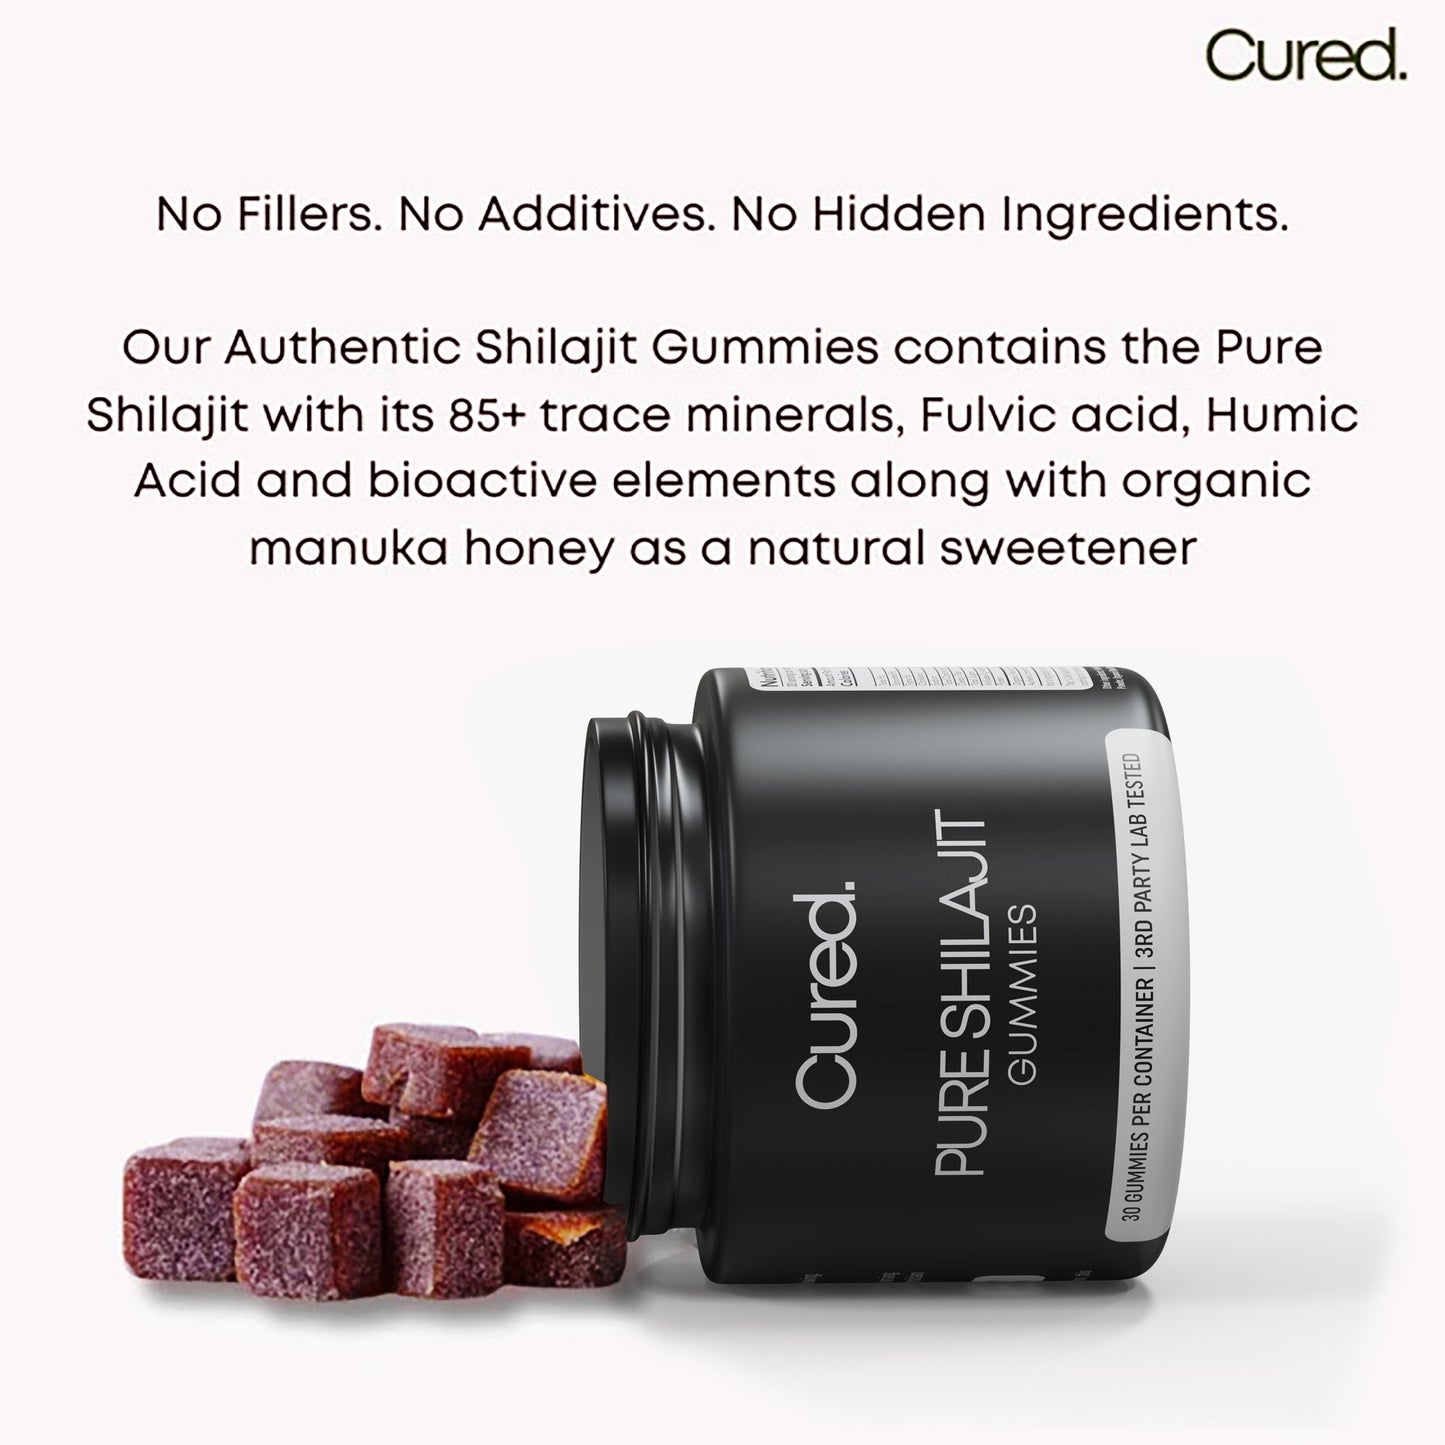 ⛰️ Gummies Shilajit authentiques CURED®